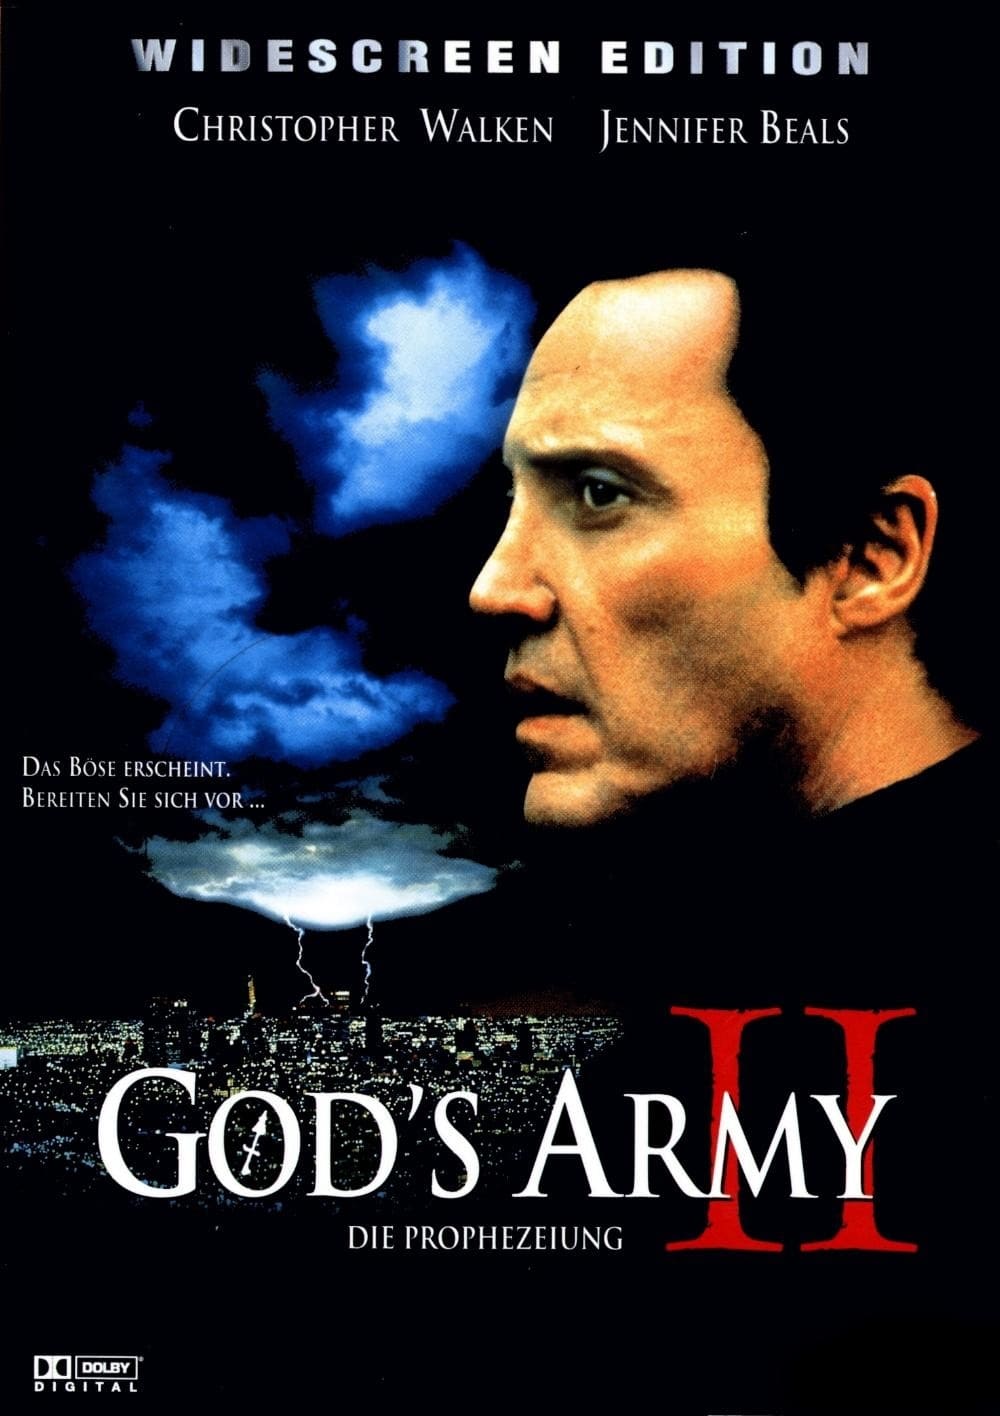 Plakat von "God's Army 2 - Die Prophezeiung"